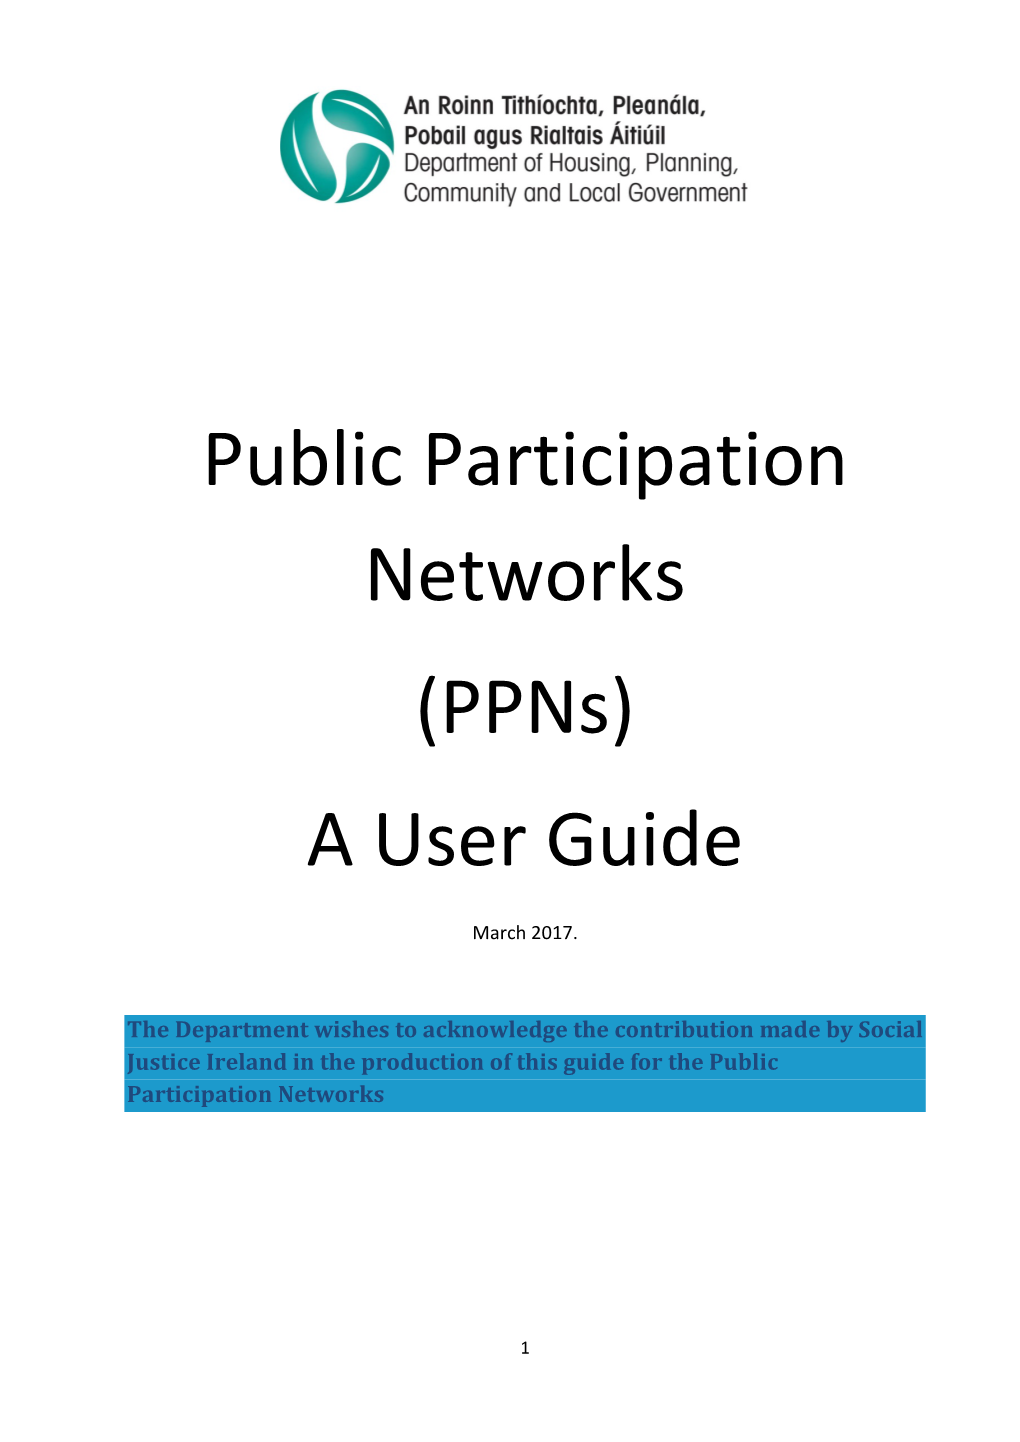 Public Participation Networks (Ppns) a User Guide